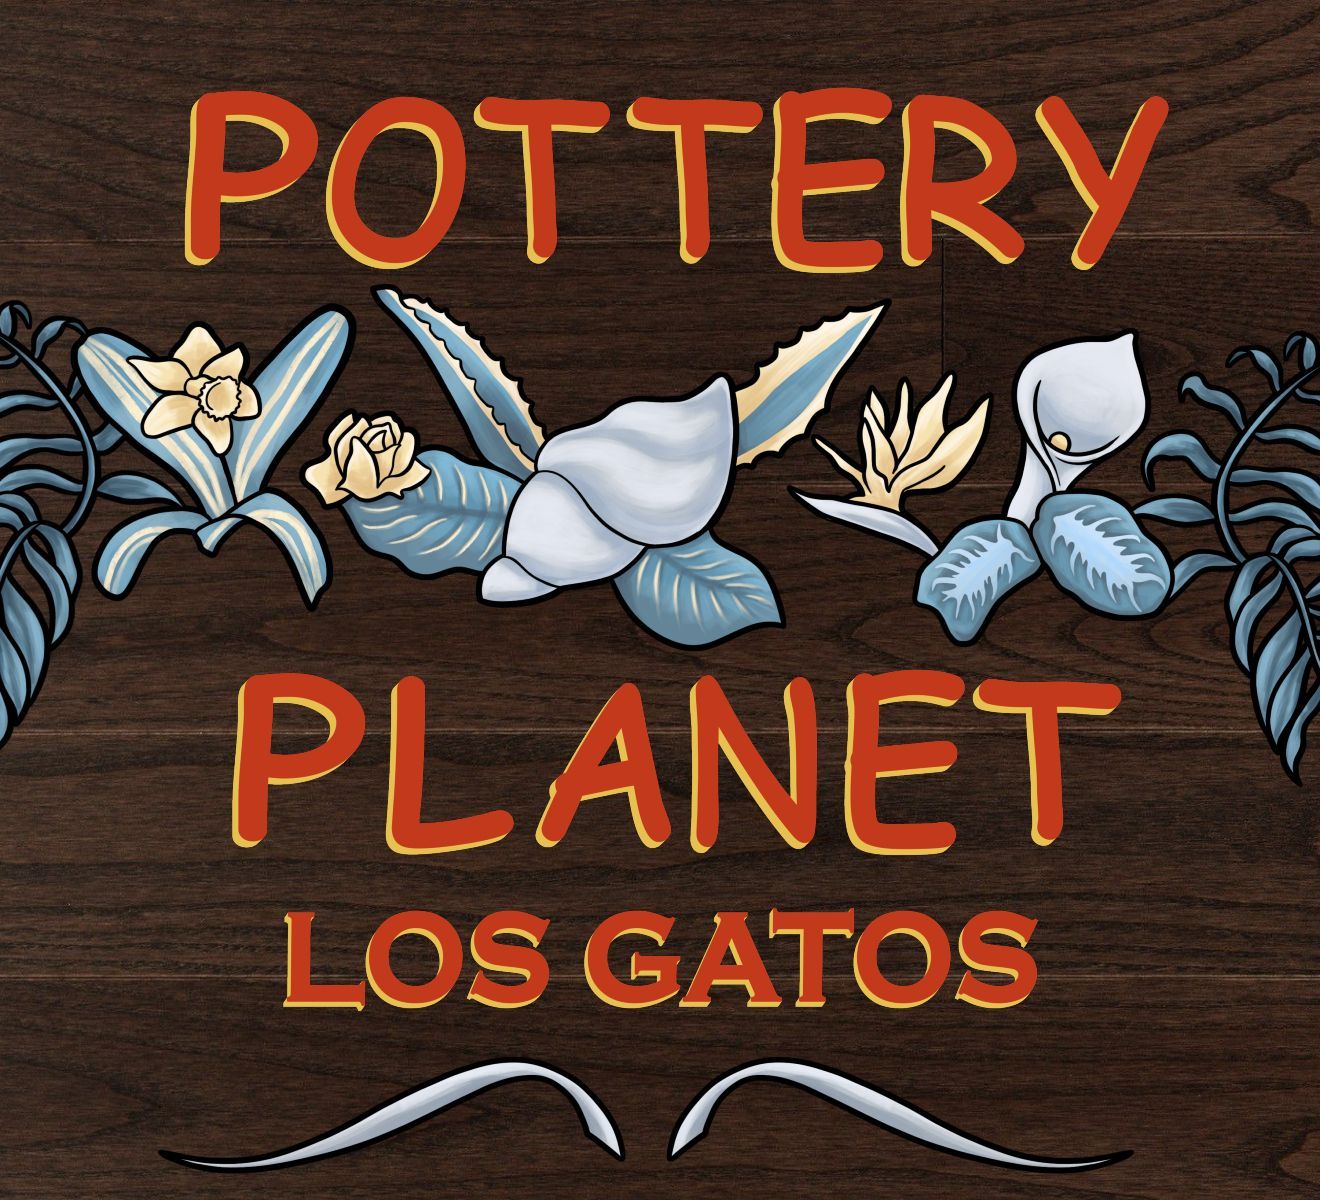 Pottery Planet - Los Gatos logo